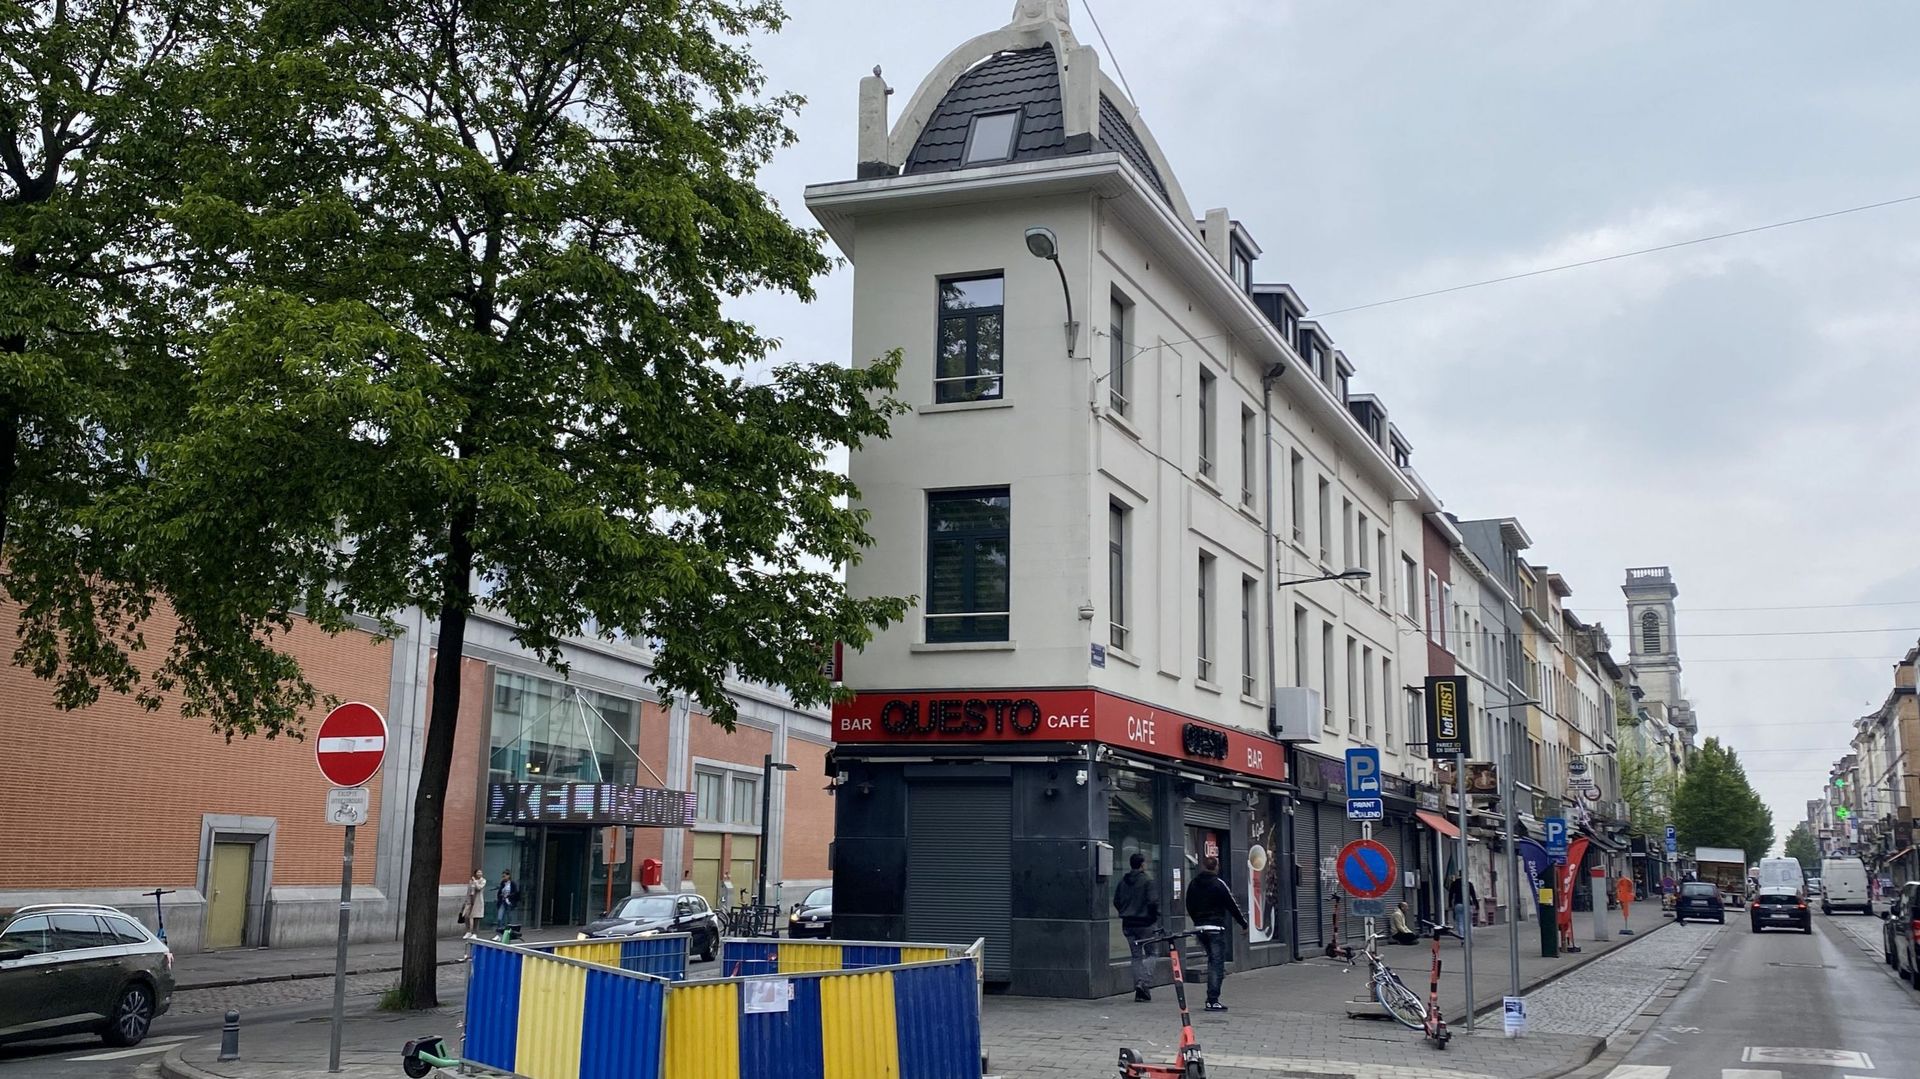 La commerçante rue de Brabant (à droite) est directement voisine de la parfois problématique rue d’Aerschot (à gauche) qui donne elle-même directement sur les entrées de la gare du Nord.